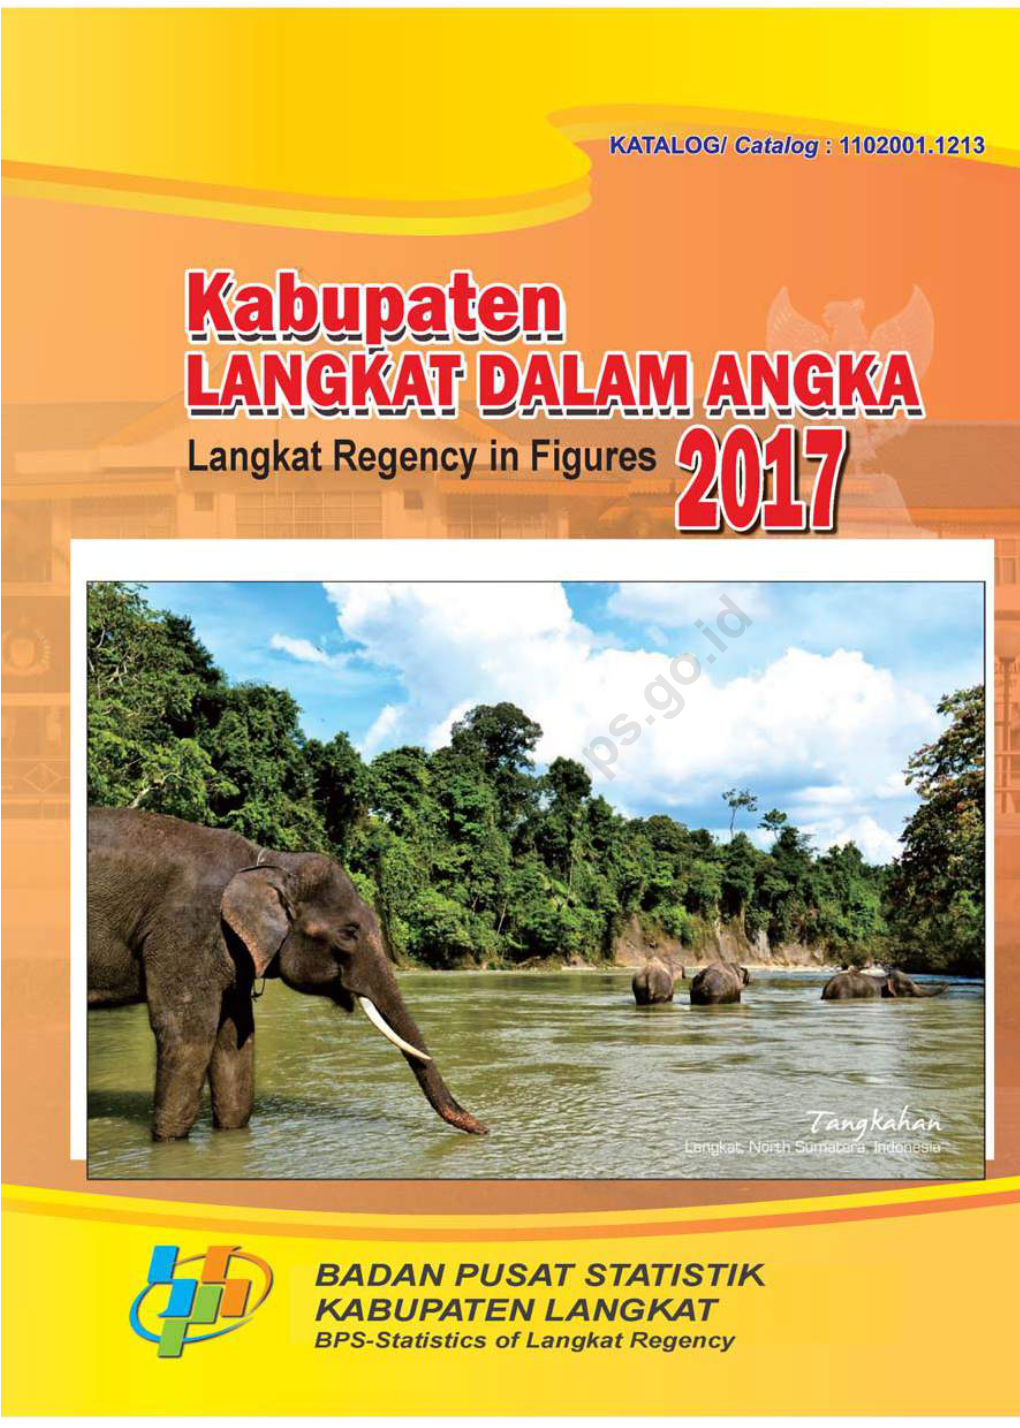 Kabupaten Langkat Dalam Angka 2017 Langkat Regency in Figures 2017